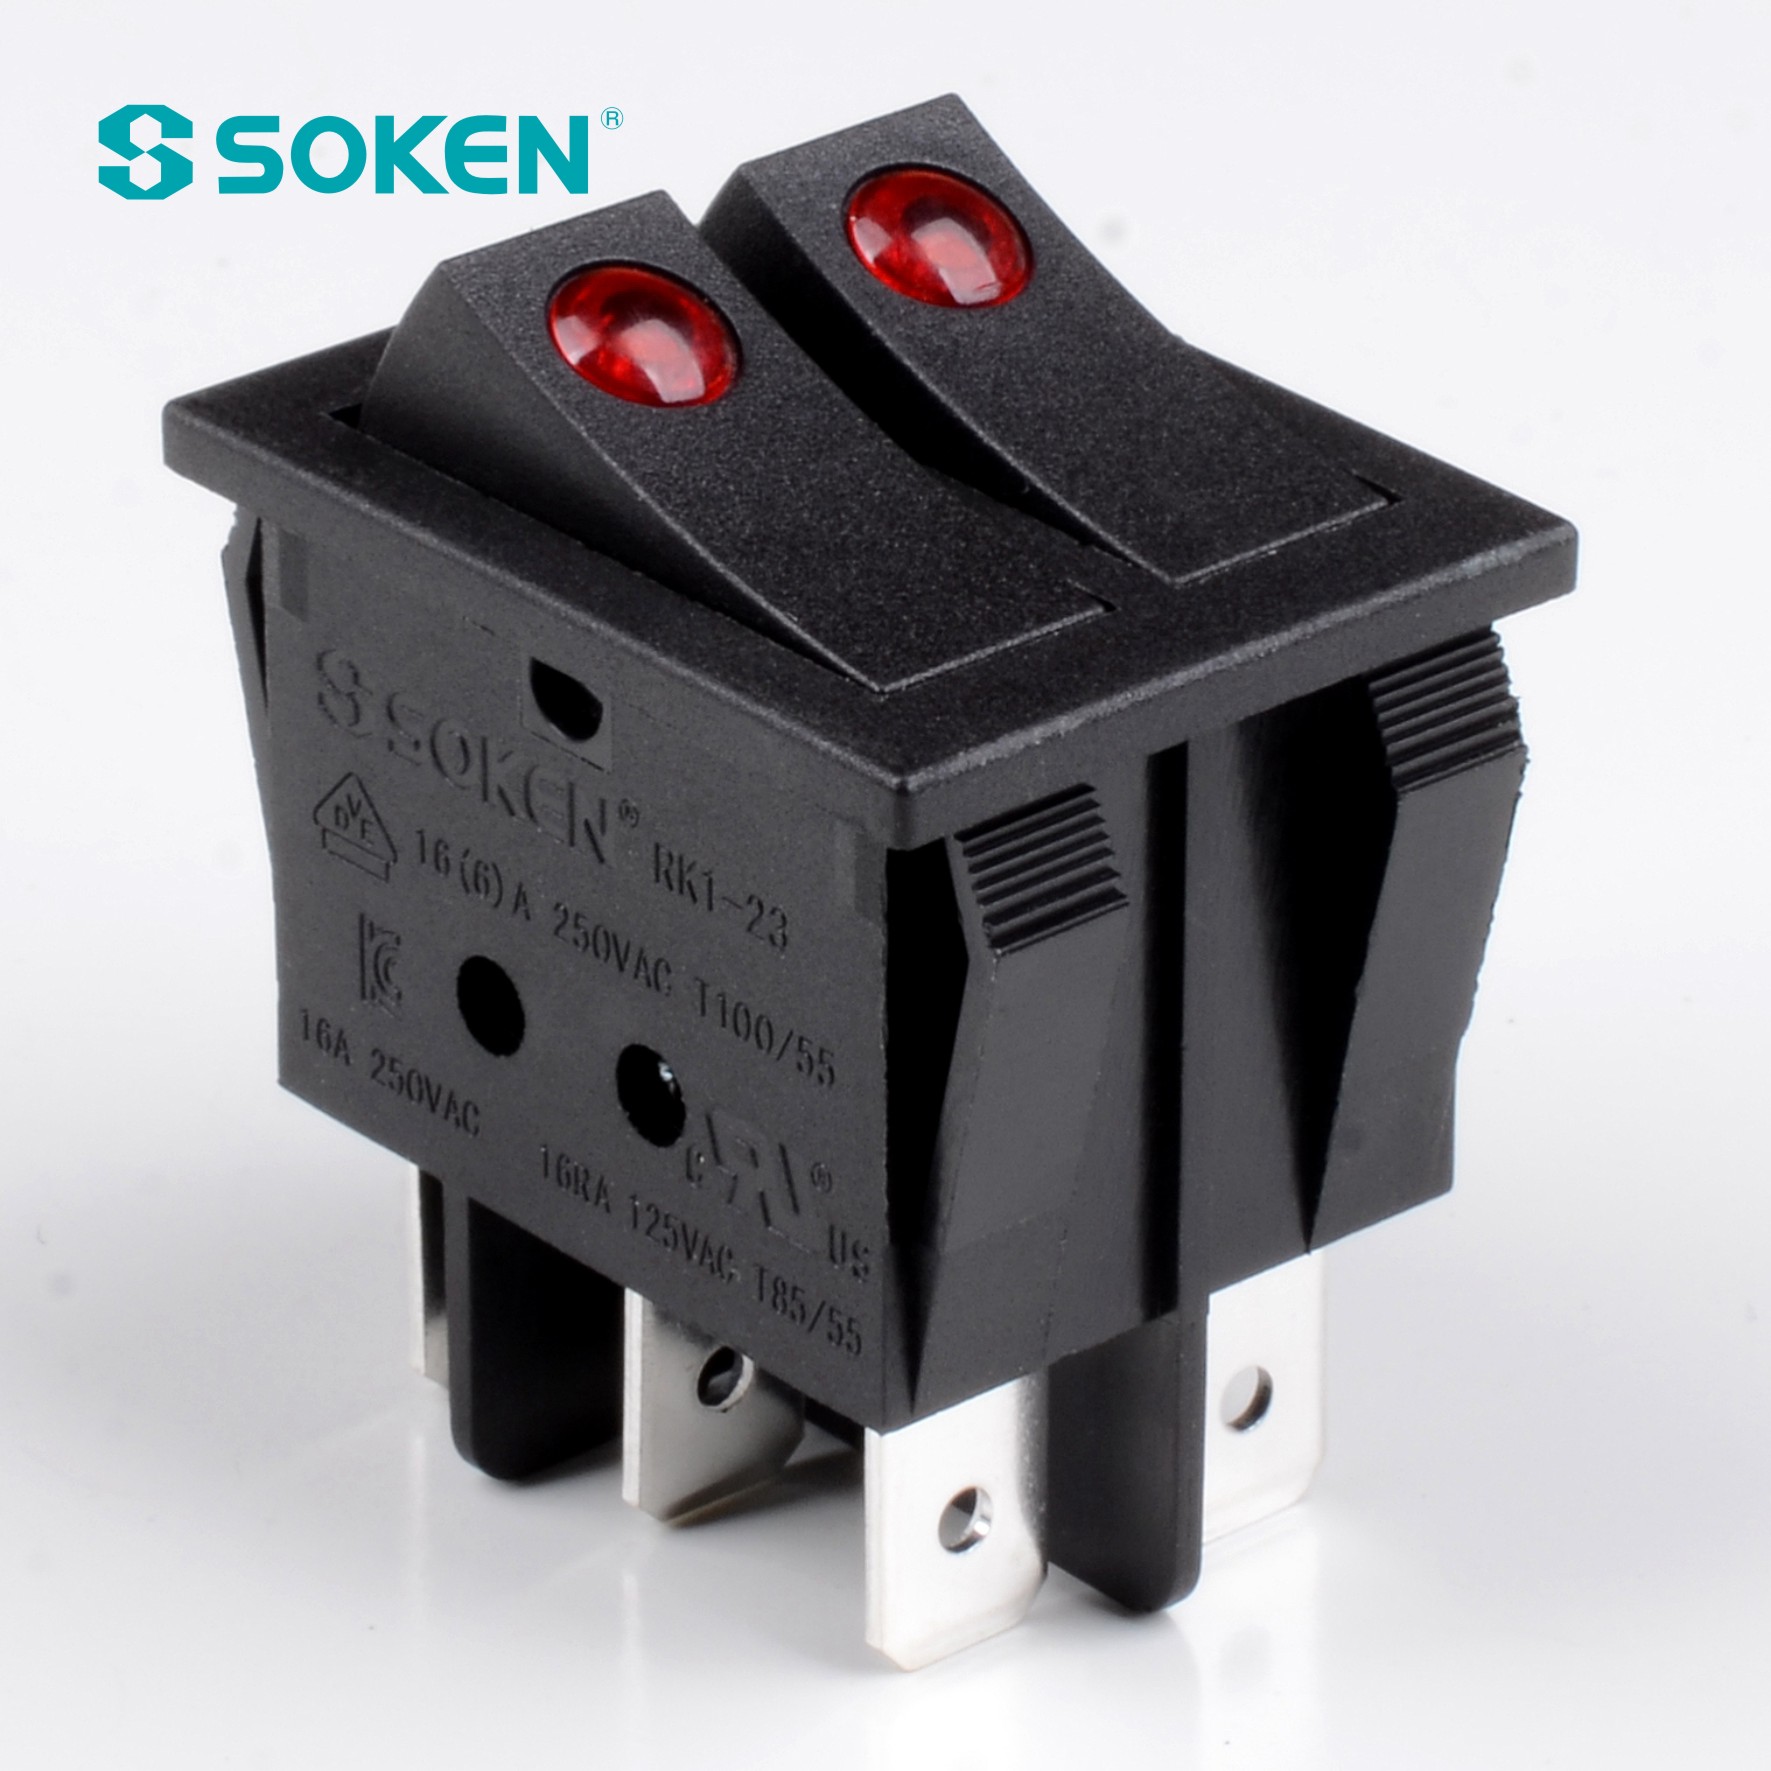 Interrupteur Soken Double interrupteur à bascule T85 boutons jumeaux